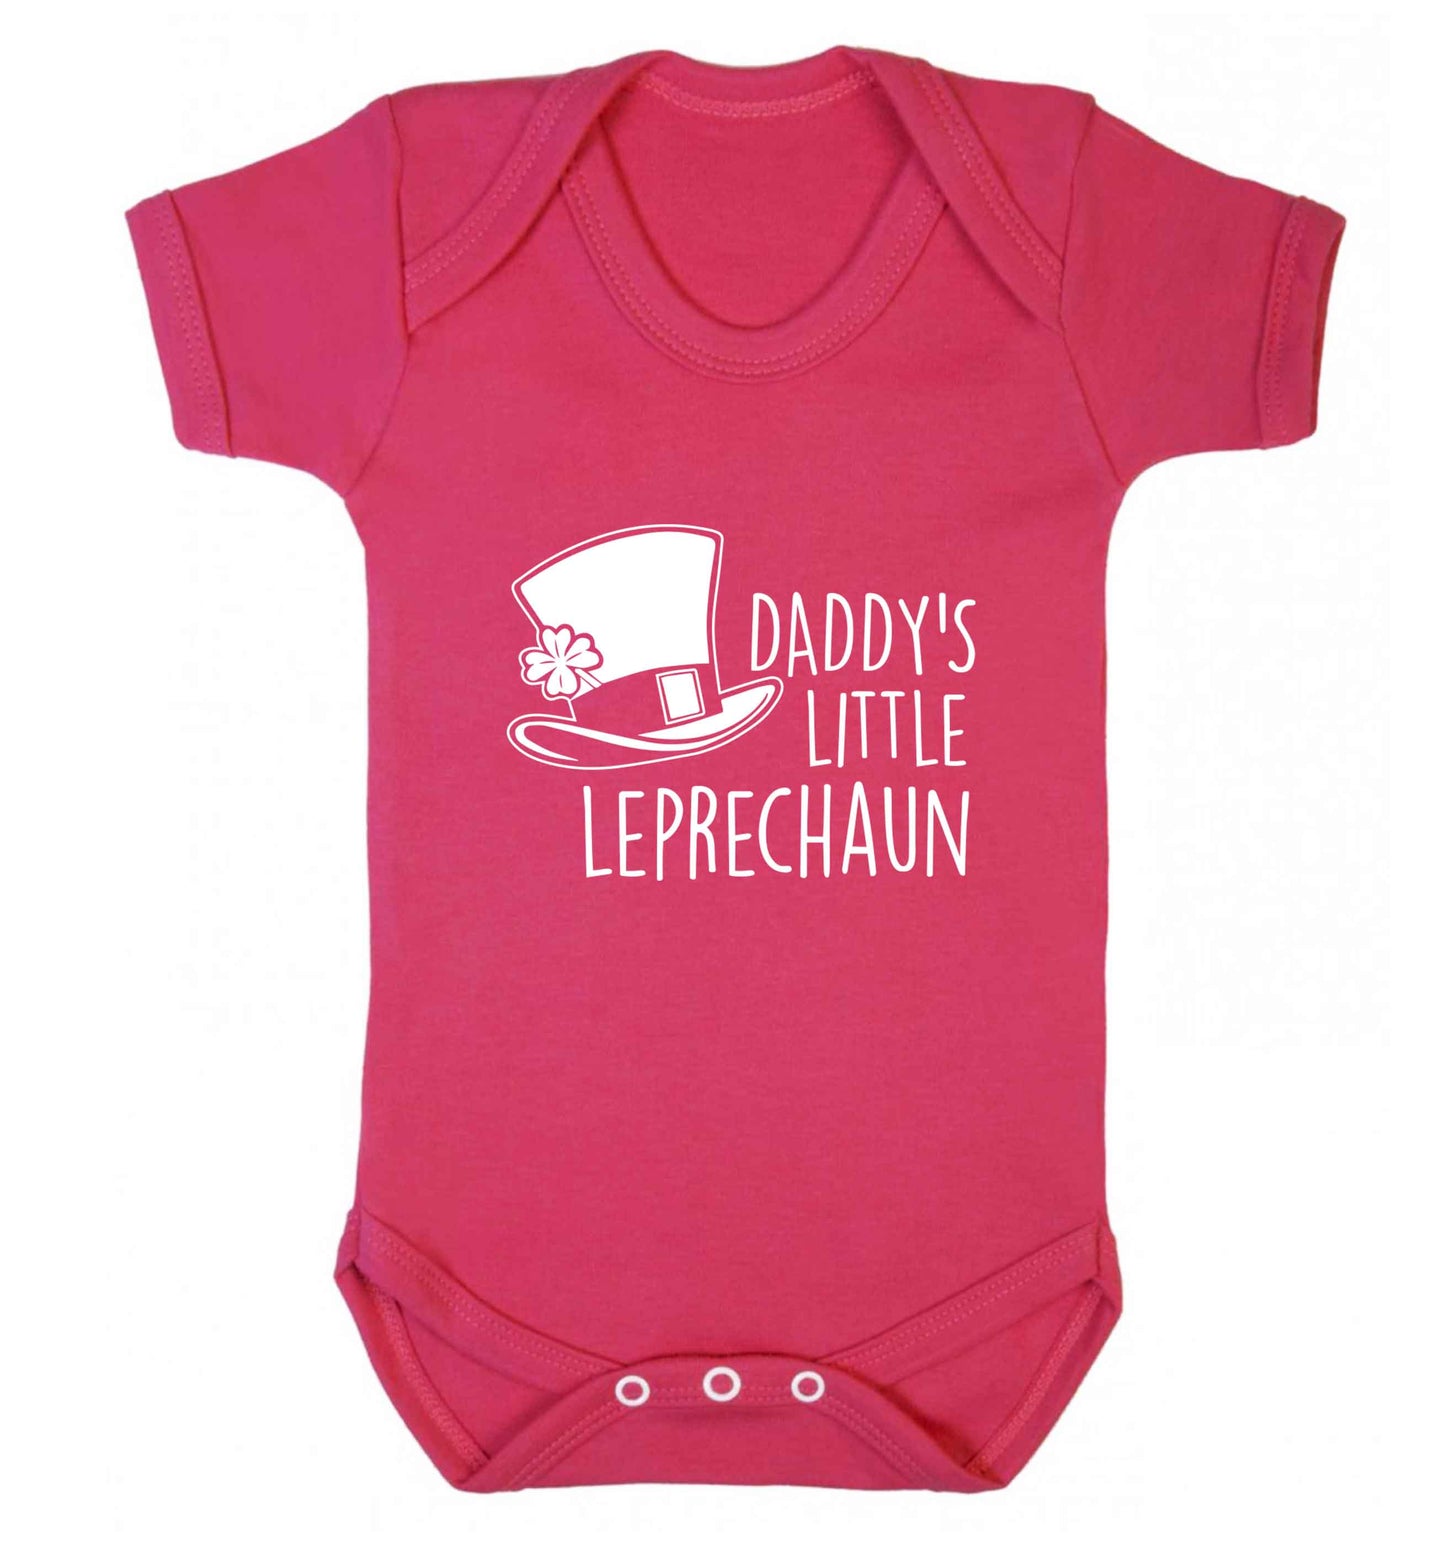 Daddy's lucky charm baby vest dark pink 18-24 months